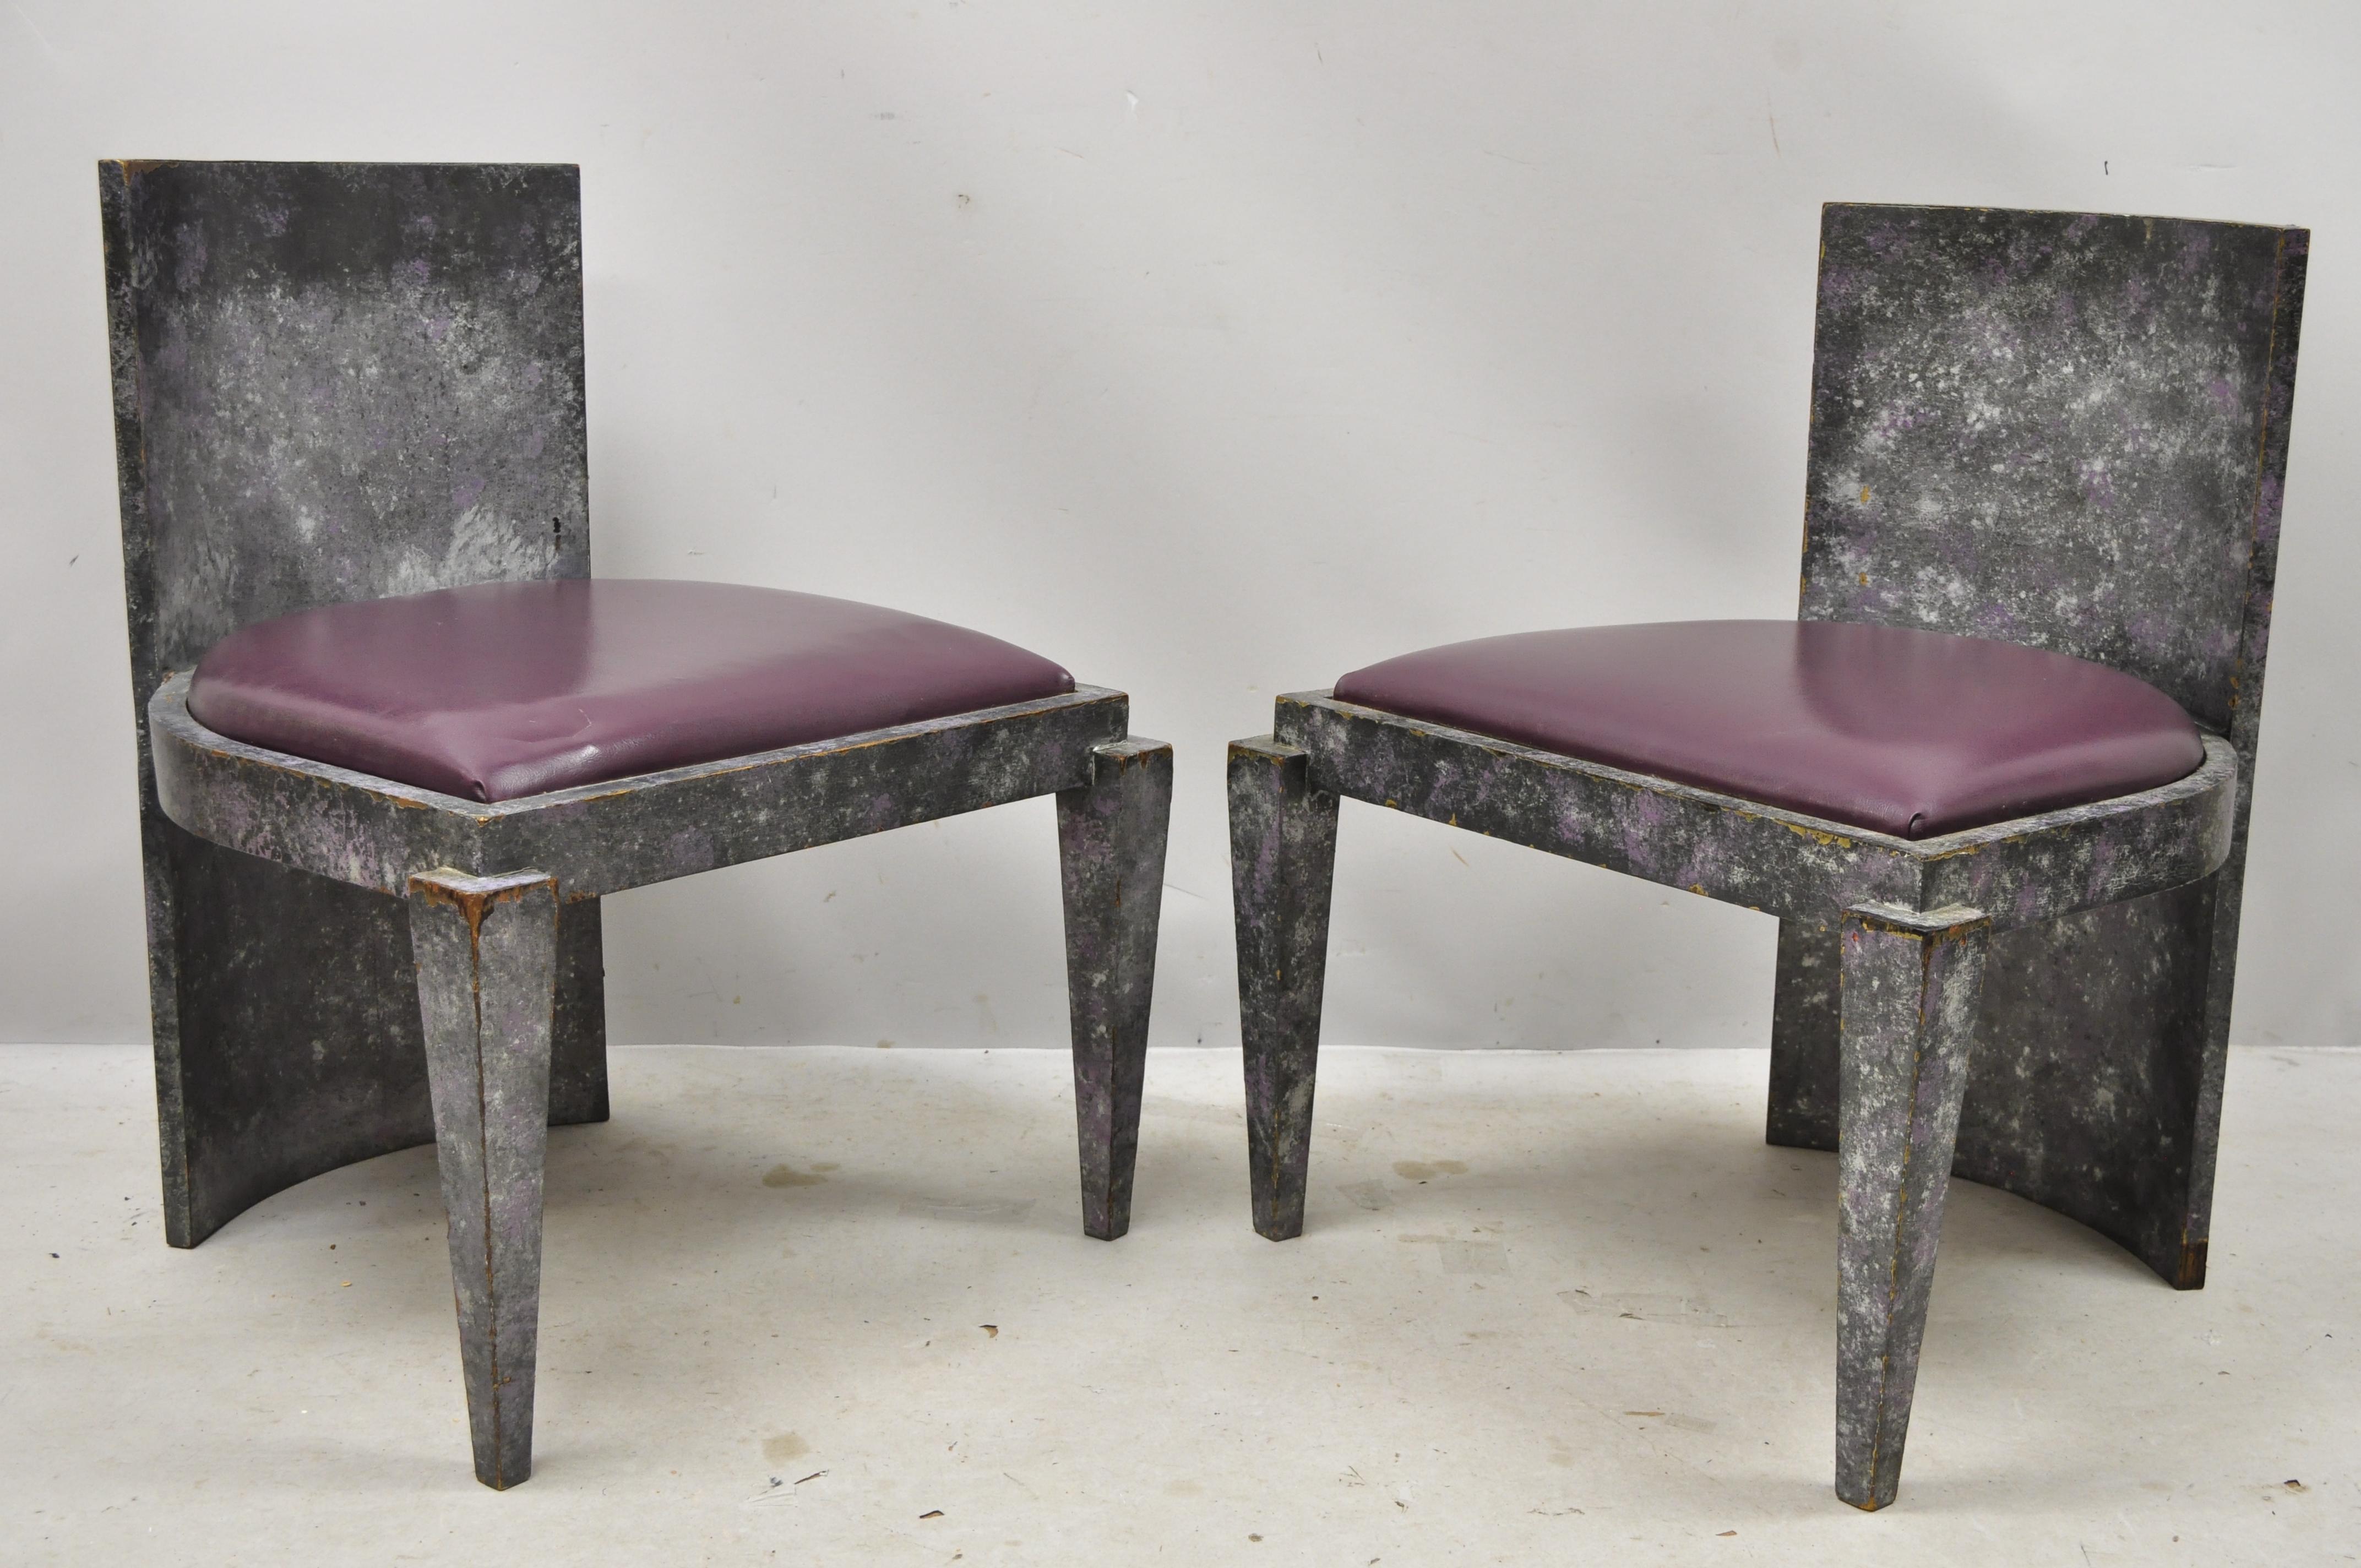 Vintage Mid-Century Modern Art Deco purple and gray lounge club game chairs - a pair. Cet article présente une finition peinte en faux béton, des dossiers incurvés, des sièges en vinyle violet, des pieds effilés, un style et une forme remarquables,